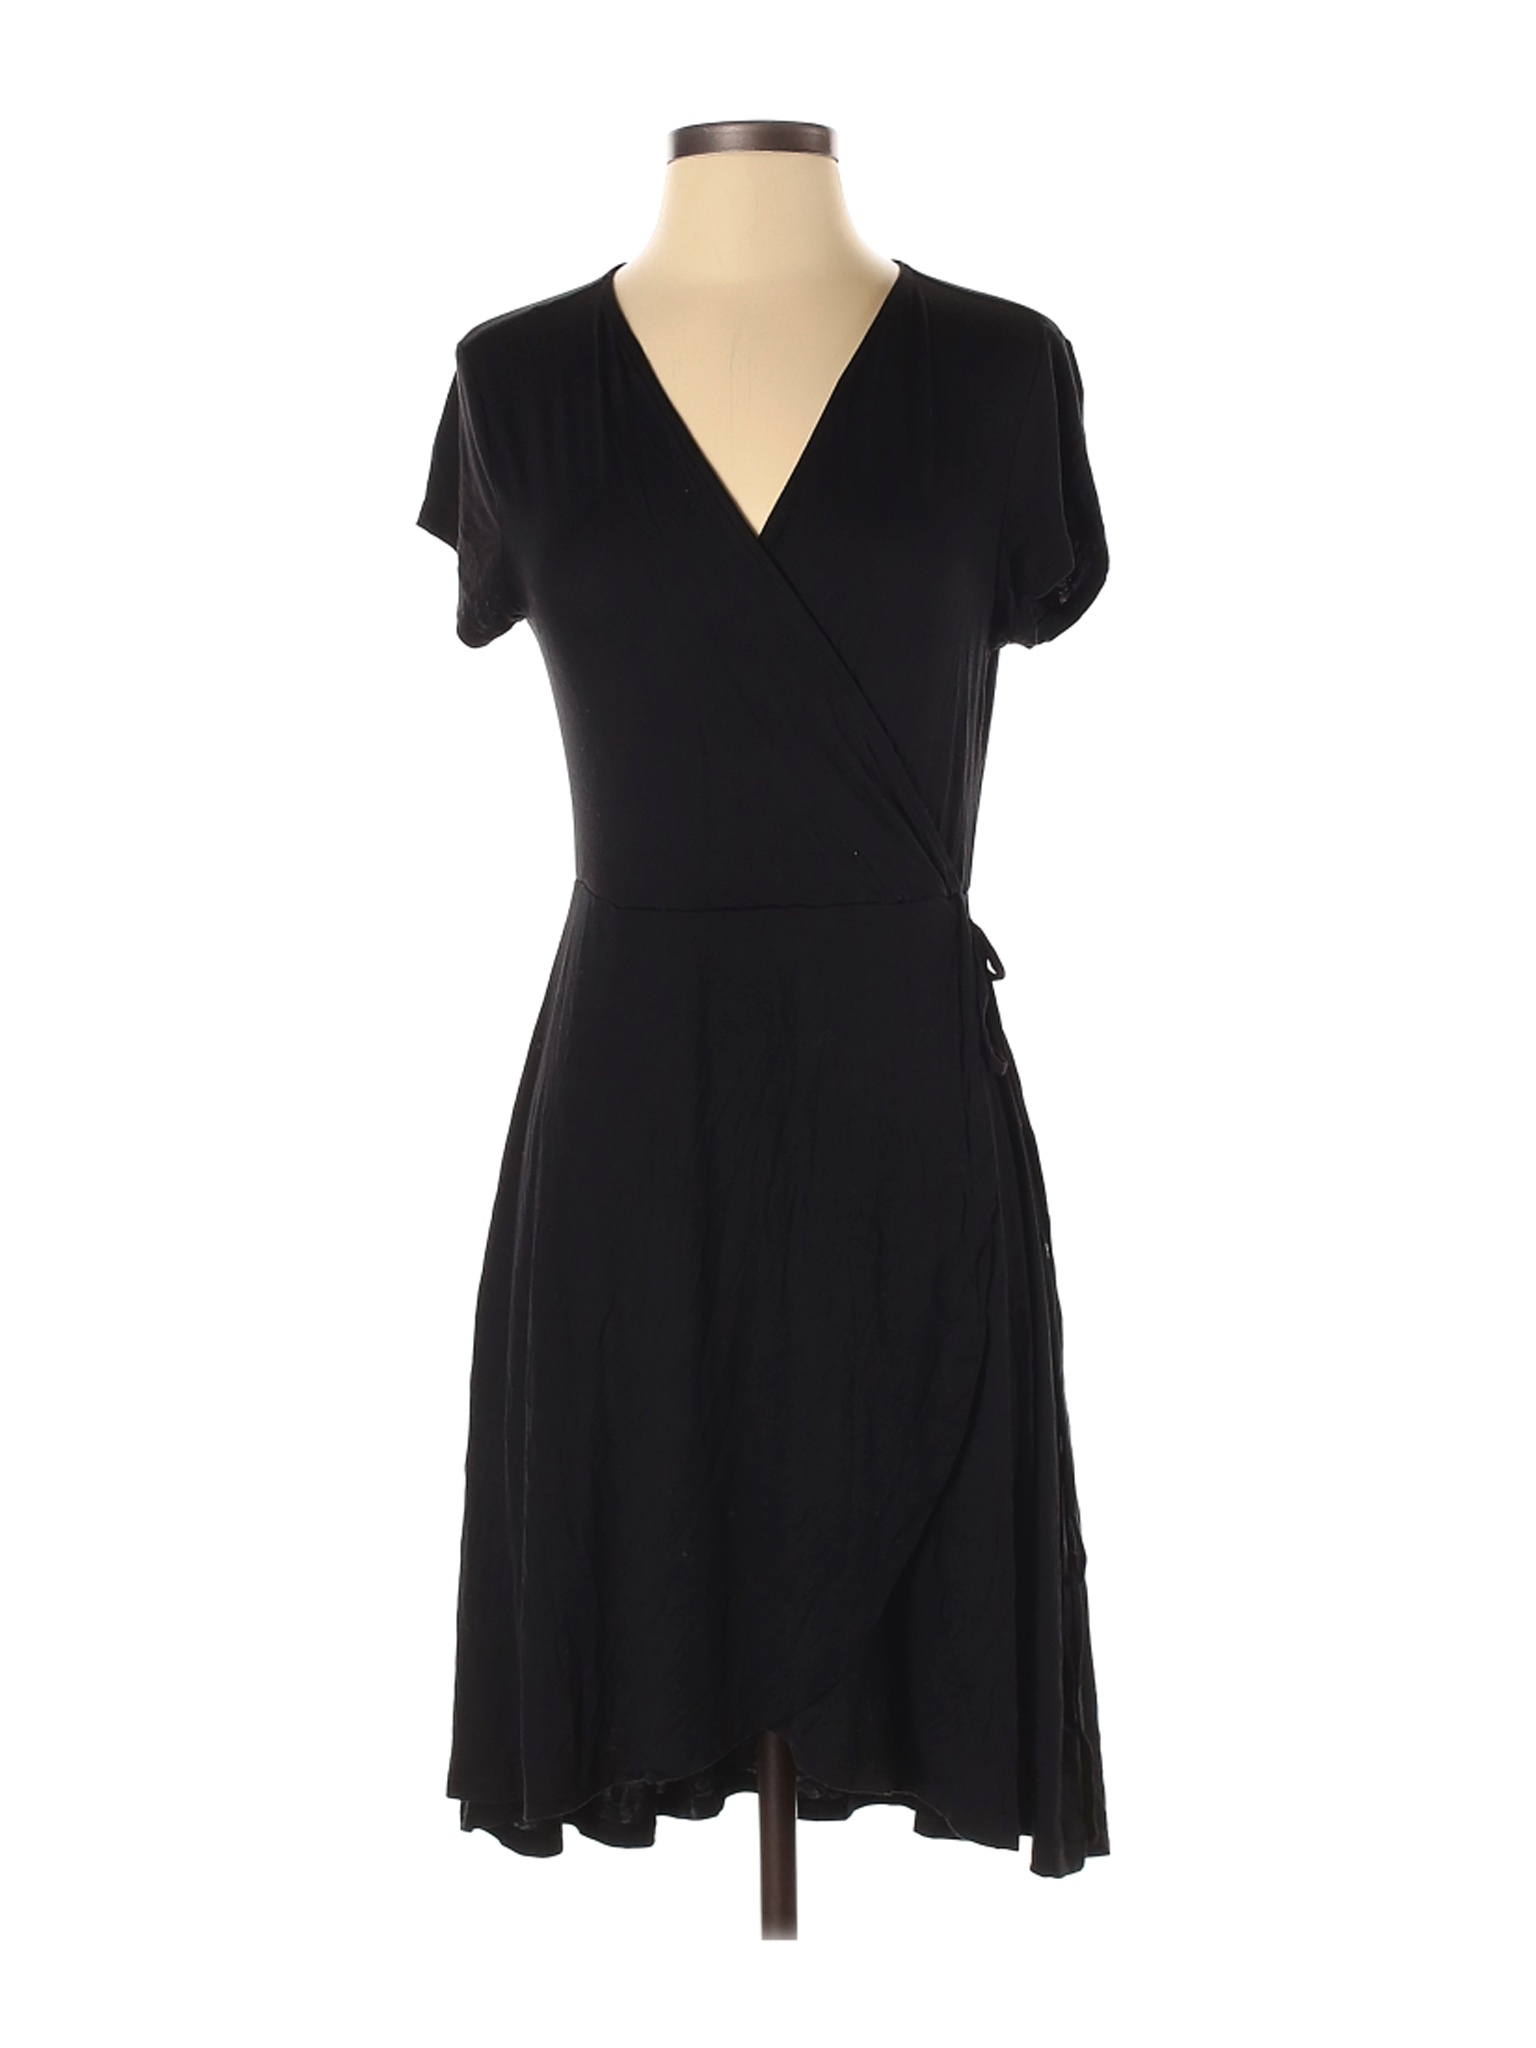 Faded Glory Women Black Casual Dress S | eBay